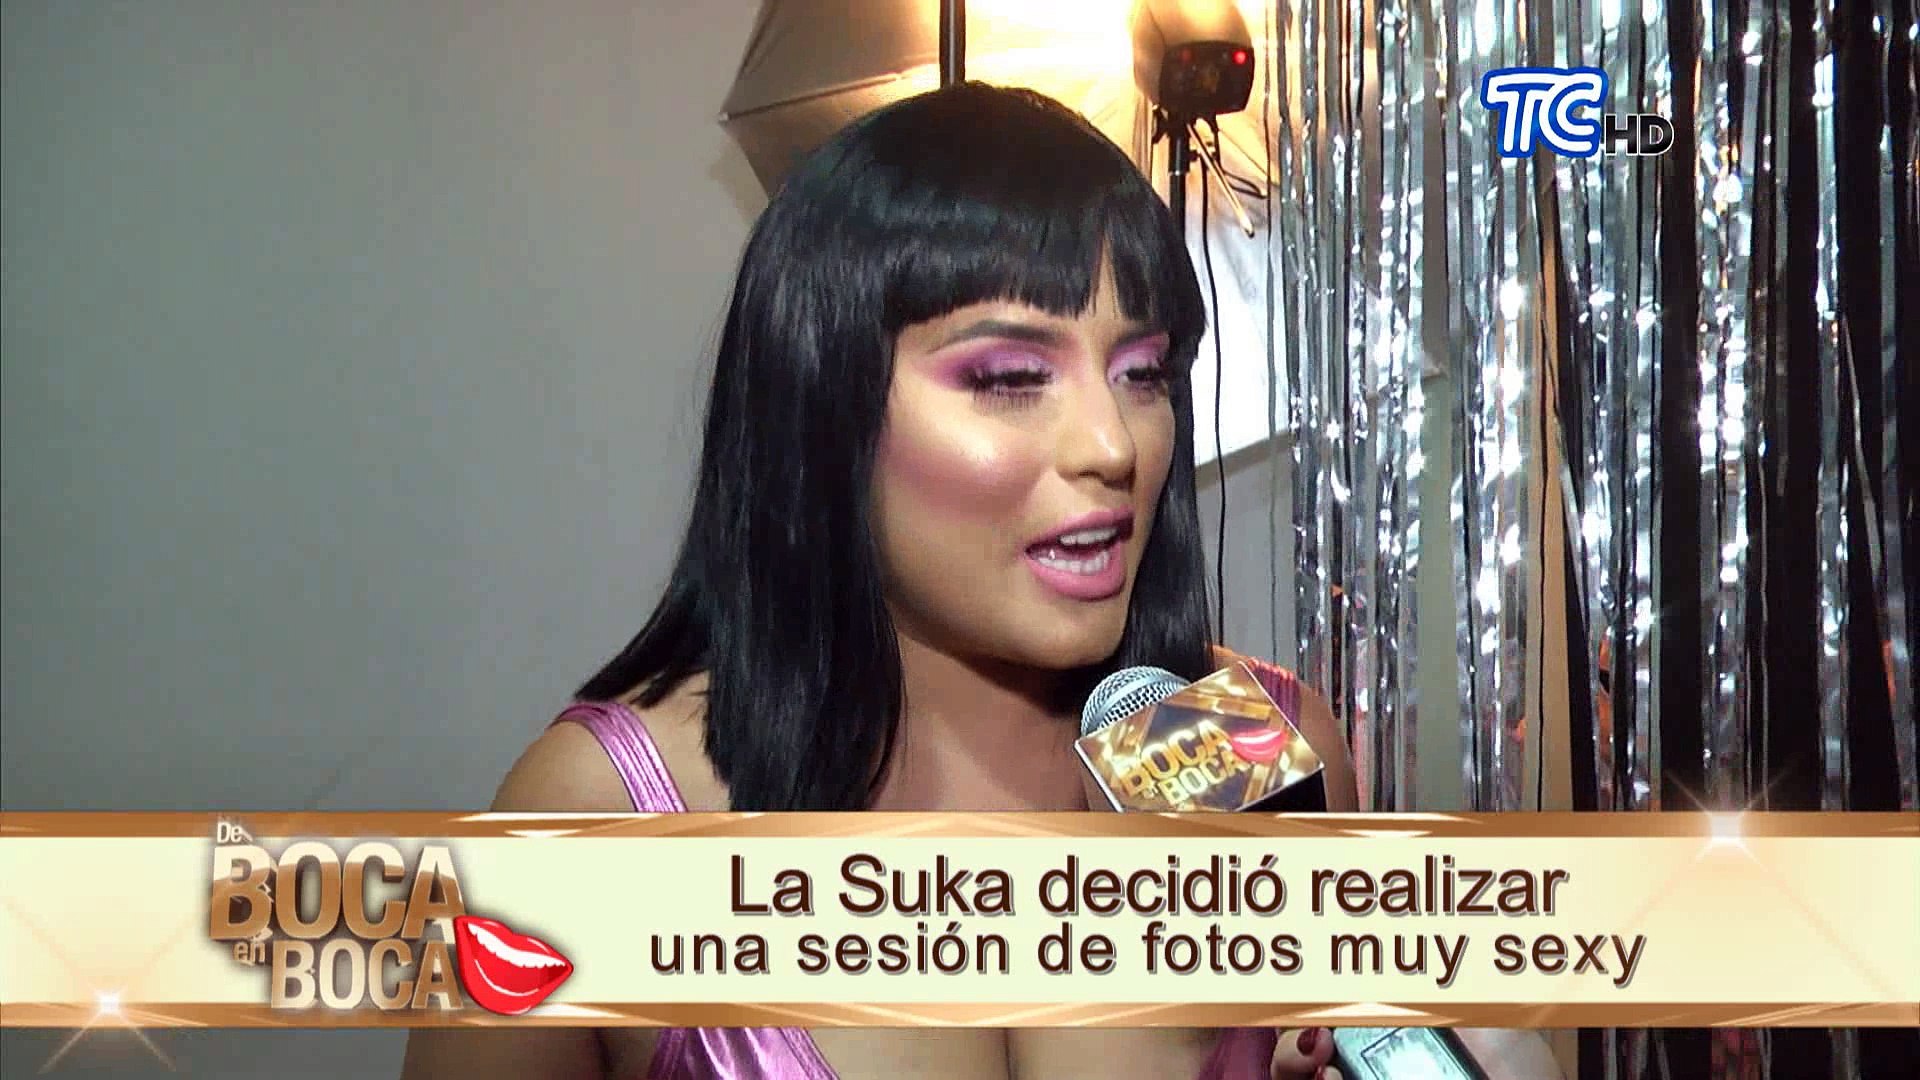 La Suka en una sexy sesión de fotos - Vídeo Dailymotion